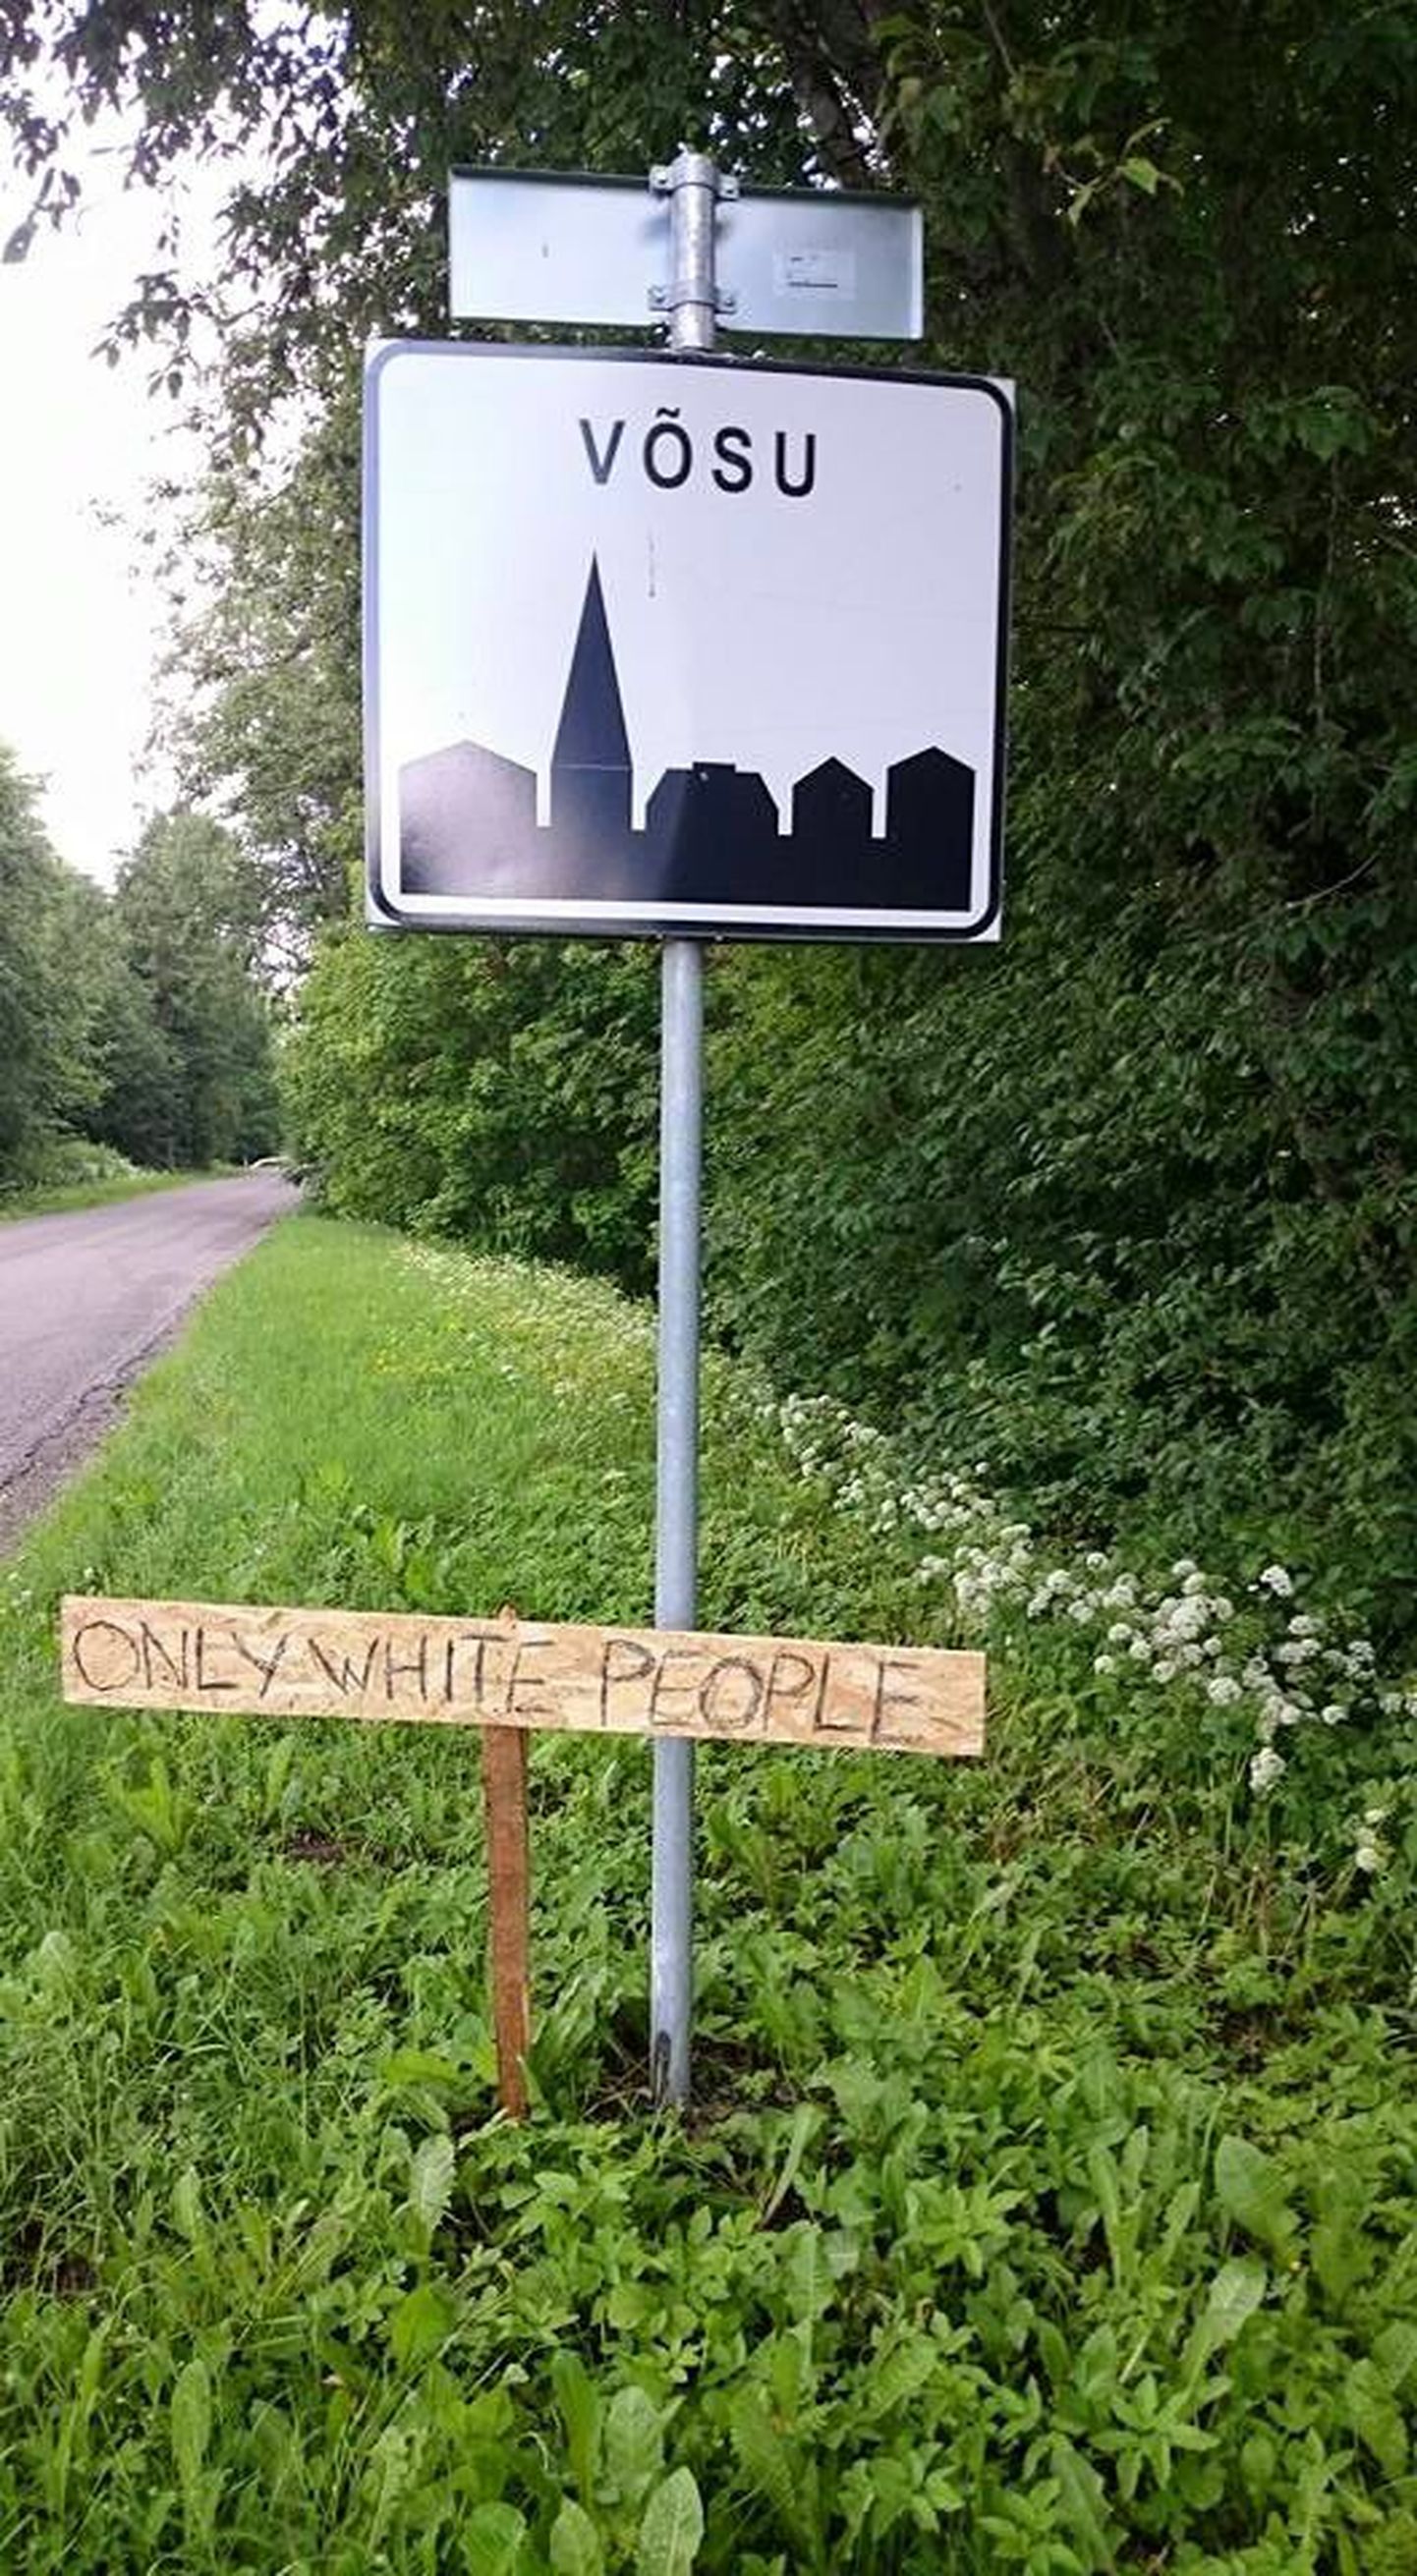 Puusildile oli inglise keeles kirjutatud "only white people", mis tõlkes tähendab, et asulasse on lubatud vaid valged inimesed.